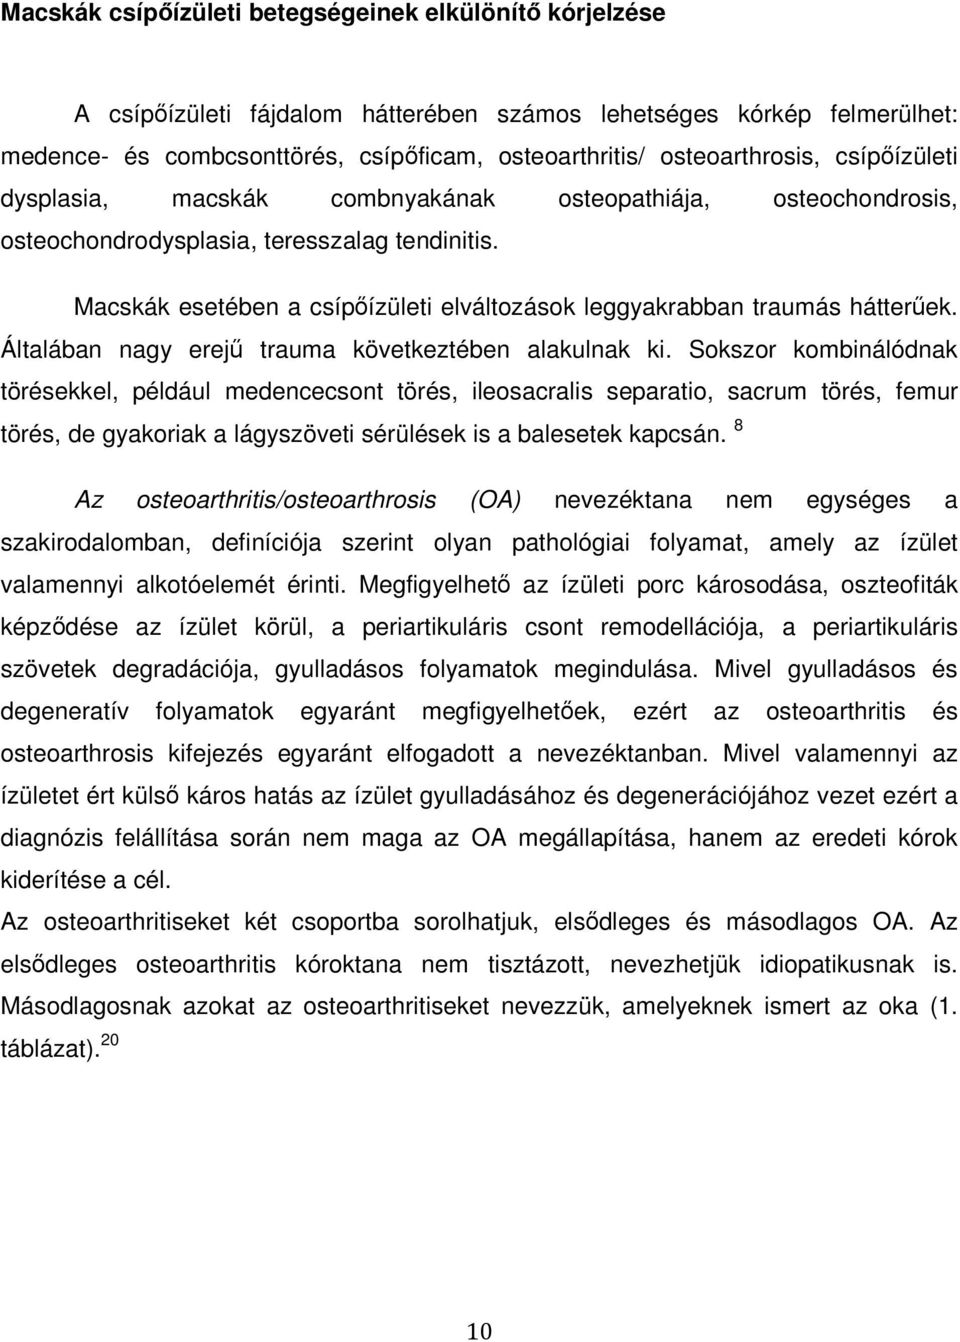 Szent István Egyetem Állatorvos-tudományi Kar. Dr. Matskási Imola - PDF  Free Download